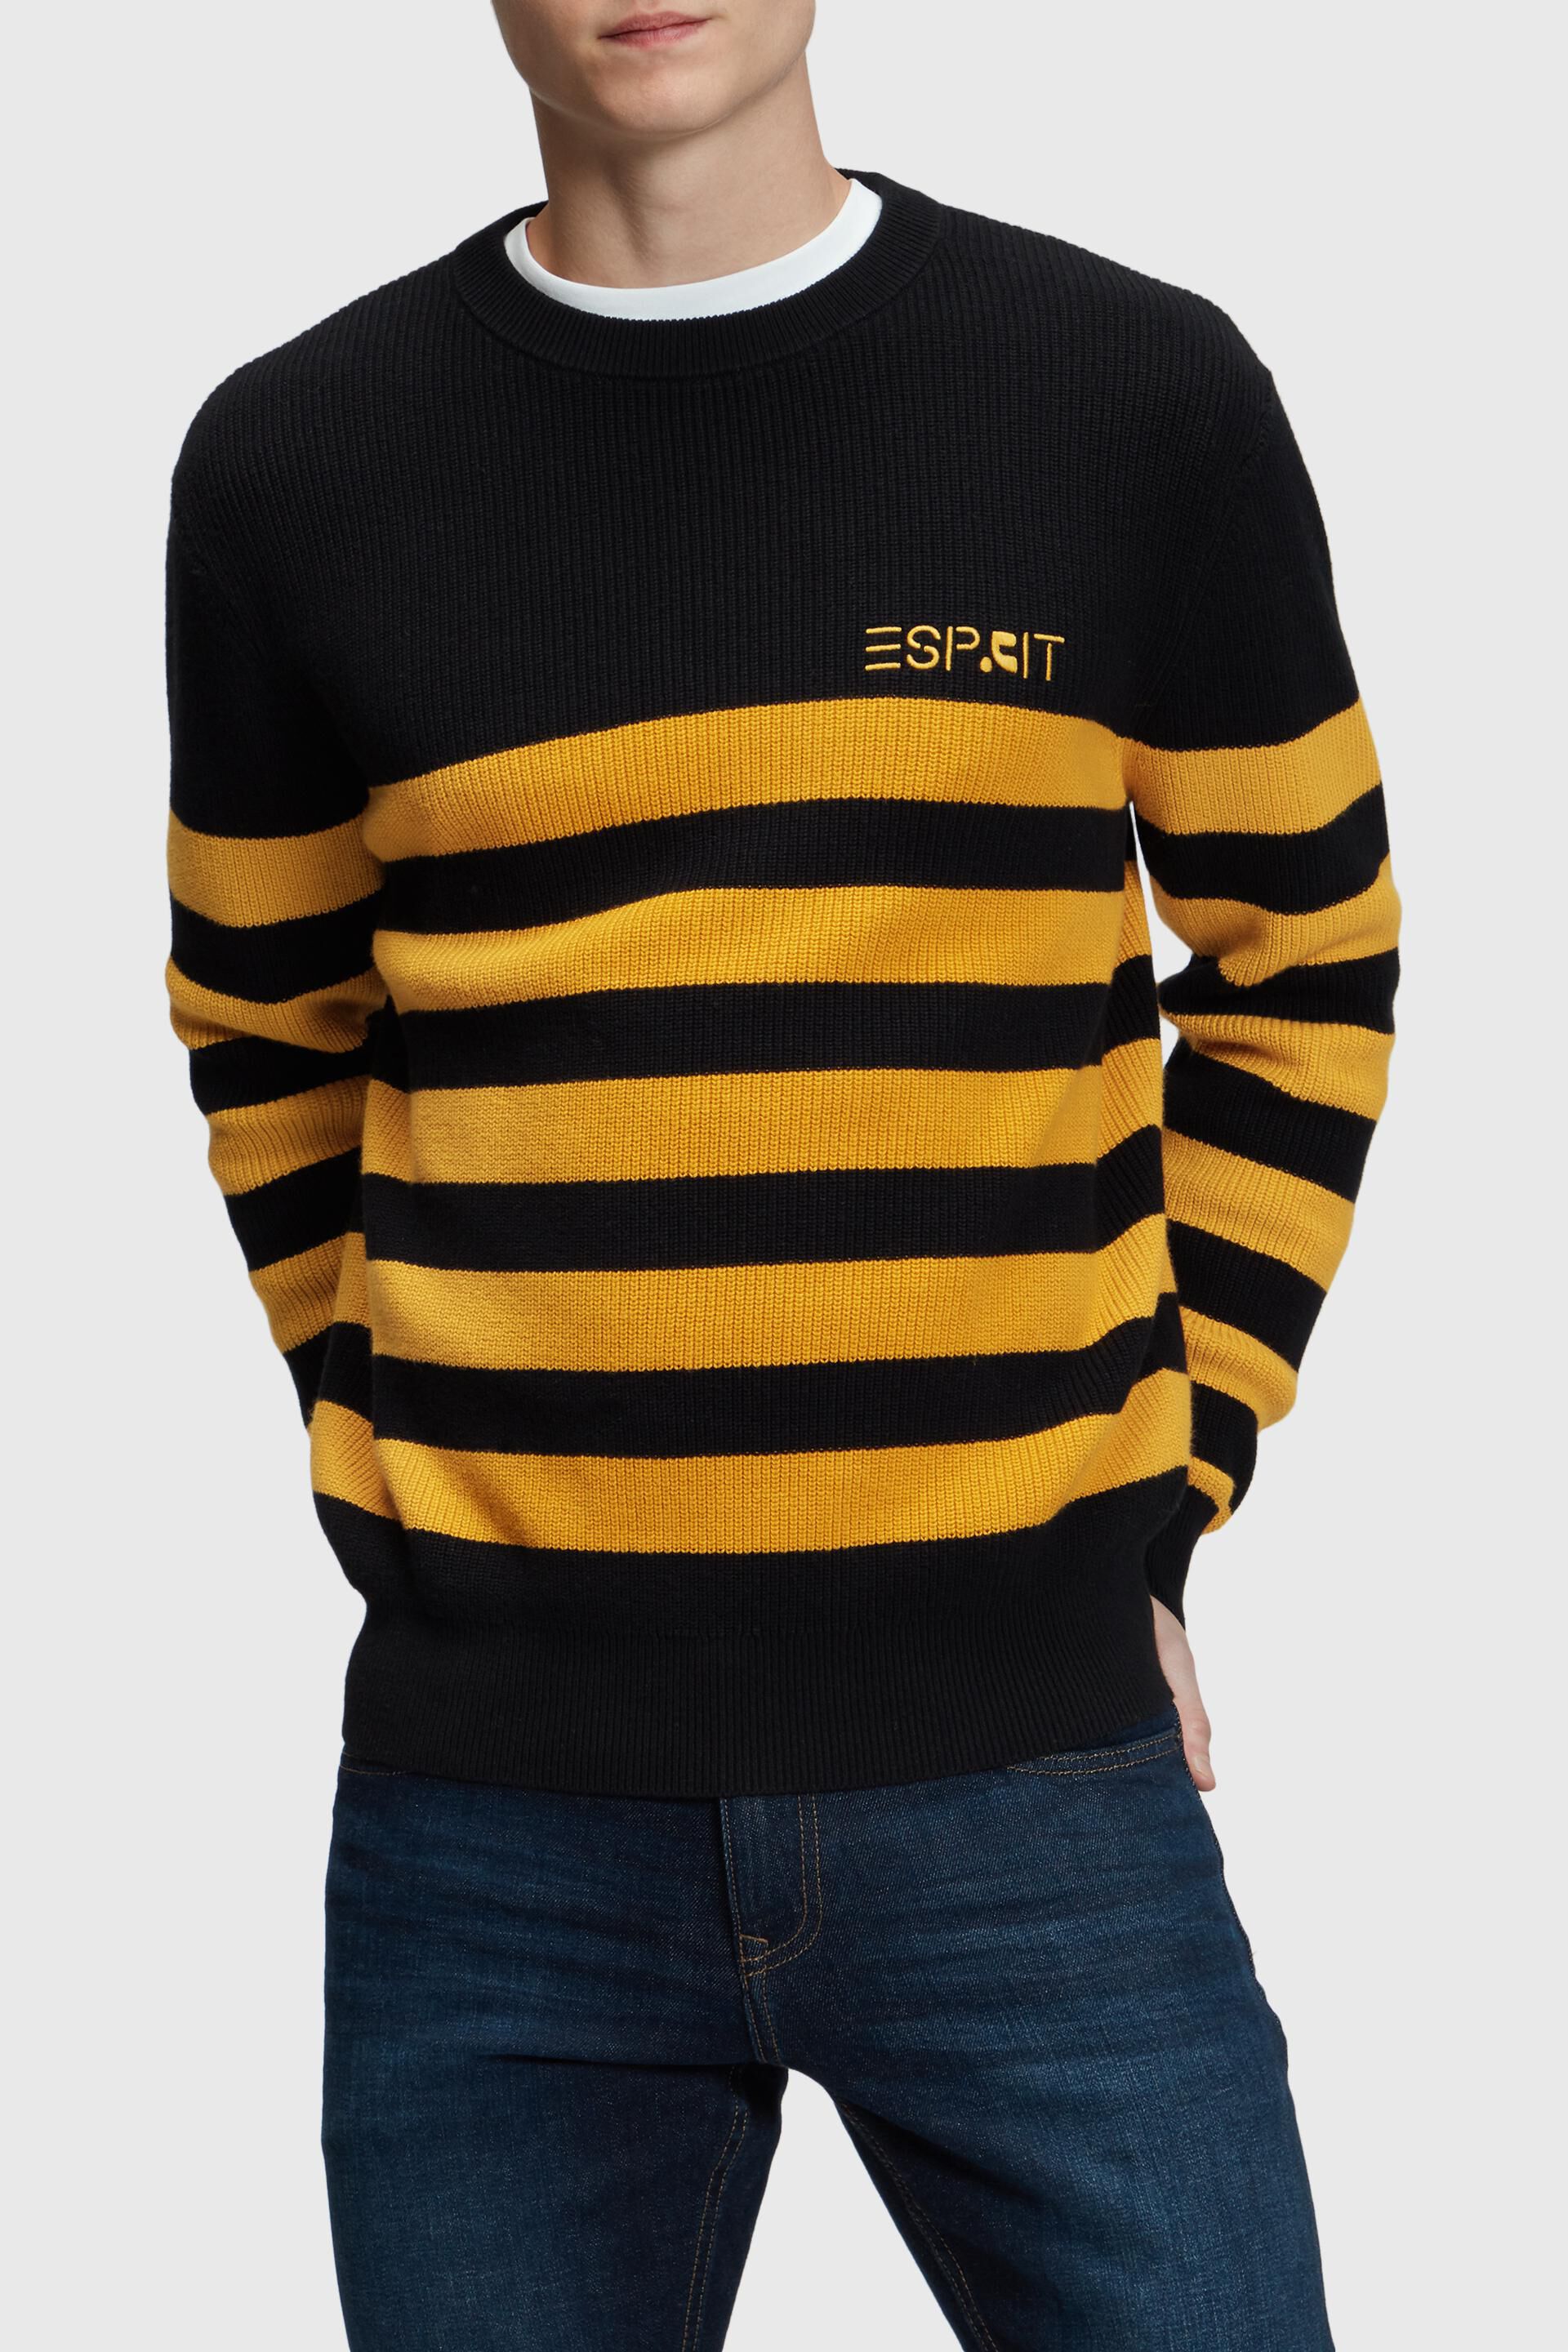 Esprit crewneck Striped jumper